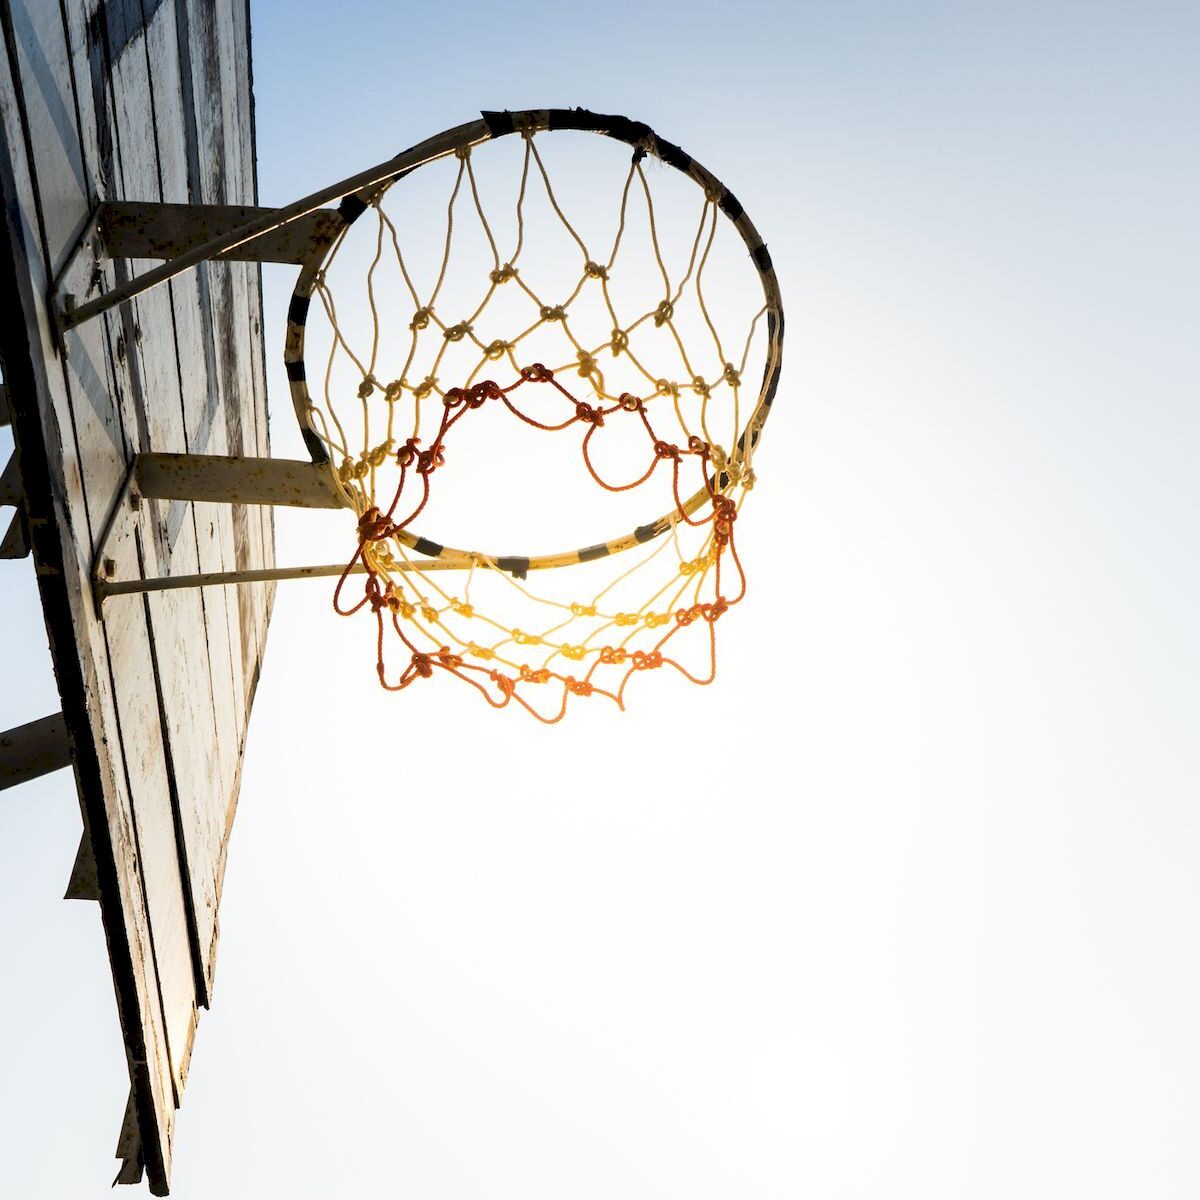 Qué tan alto debe ser el aro de basquet? - Kartal 24